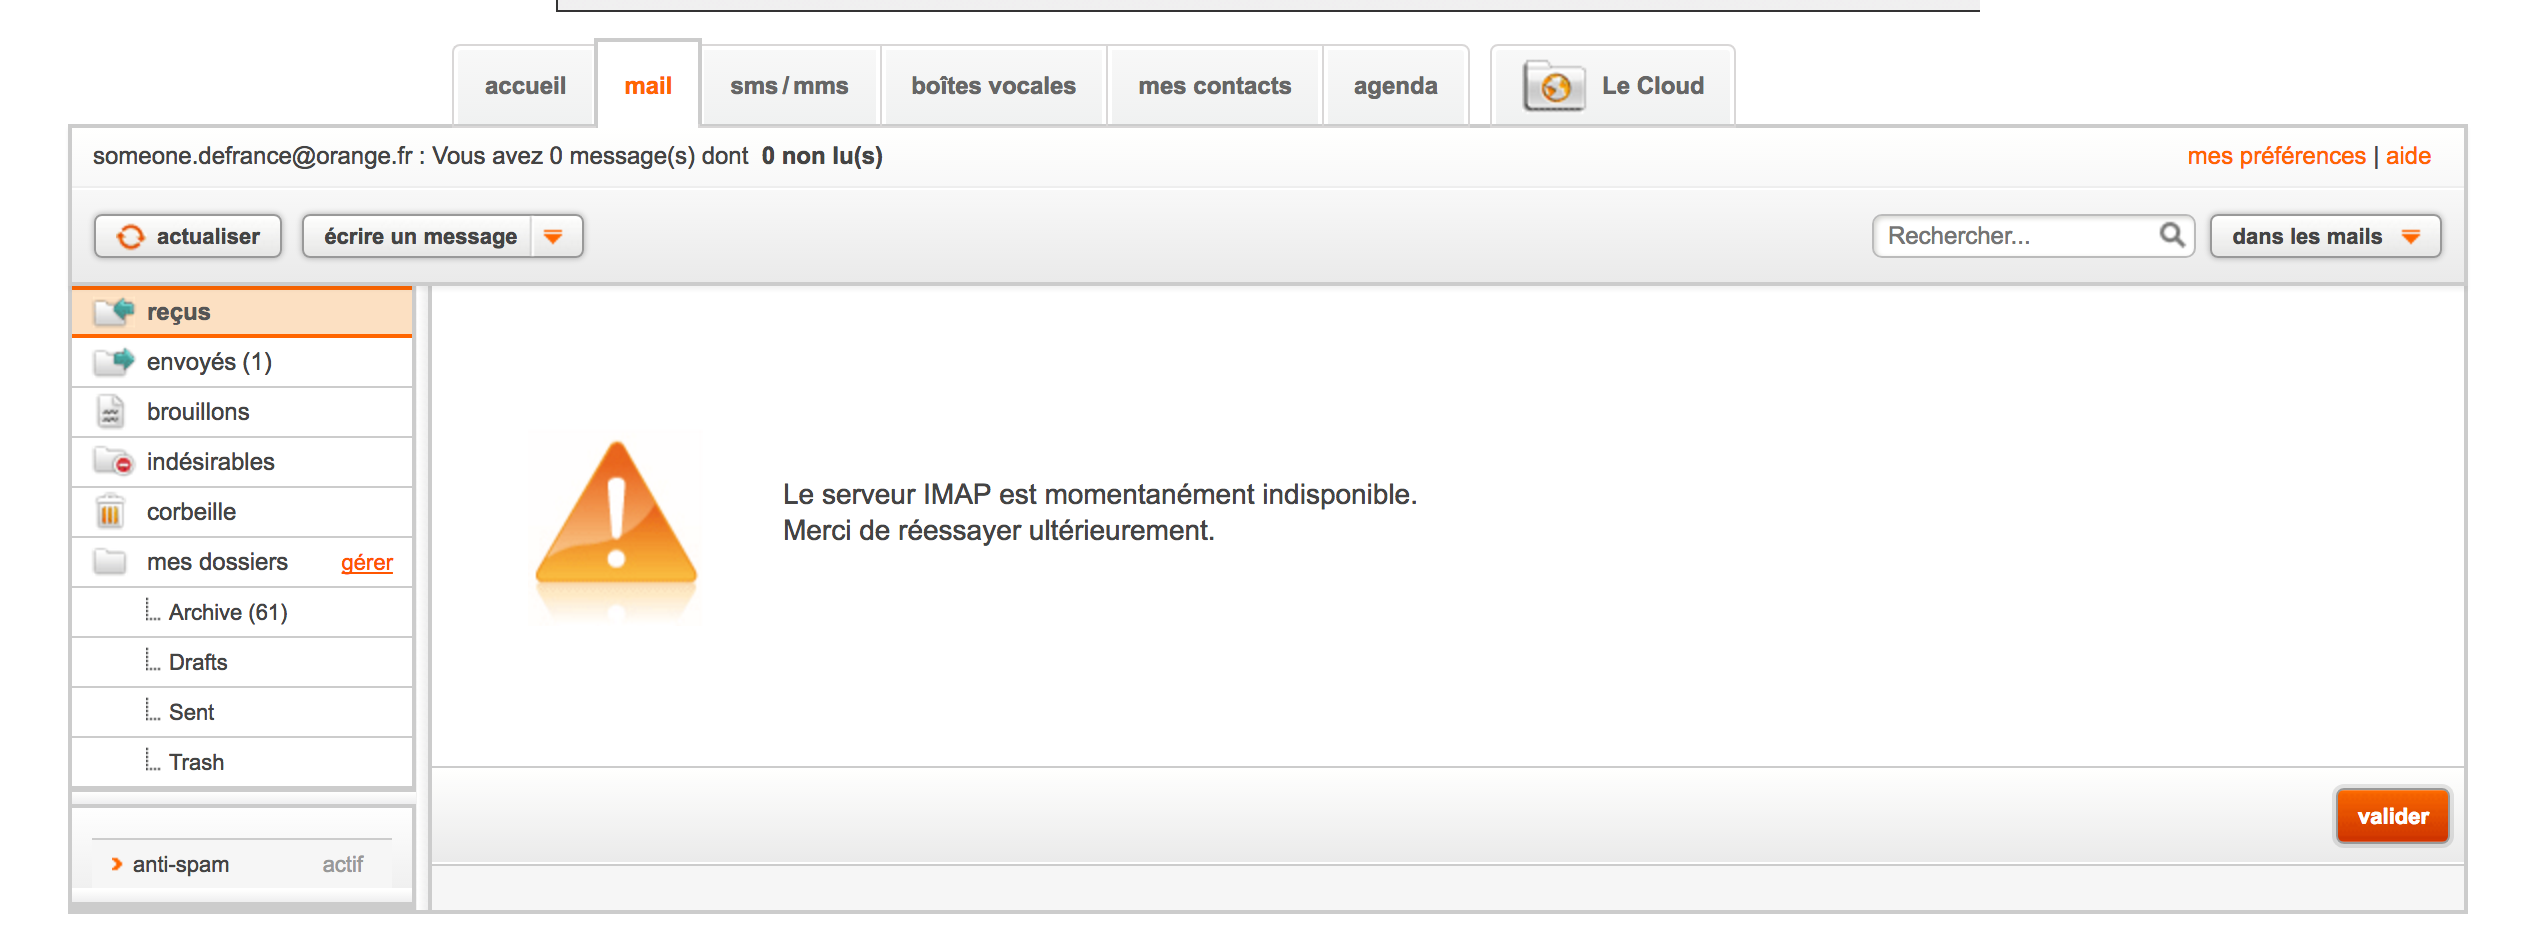 Le serveur IMAP est momentanément indisponible. Me... - Page 2 - Communauté  Orange